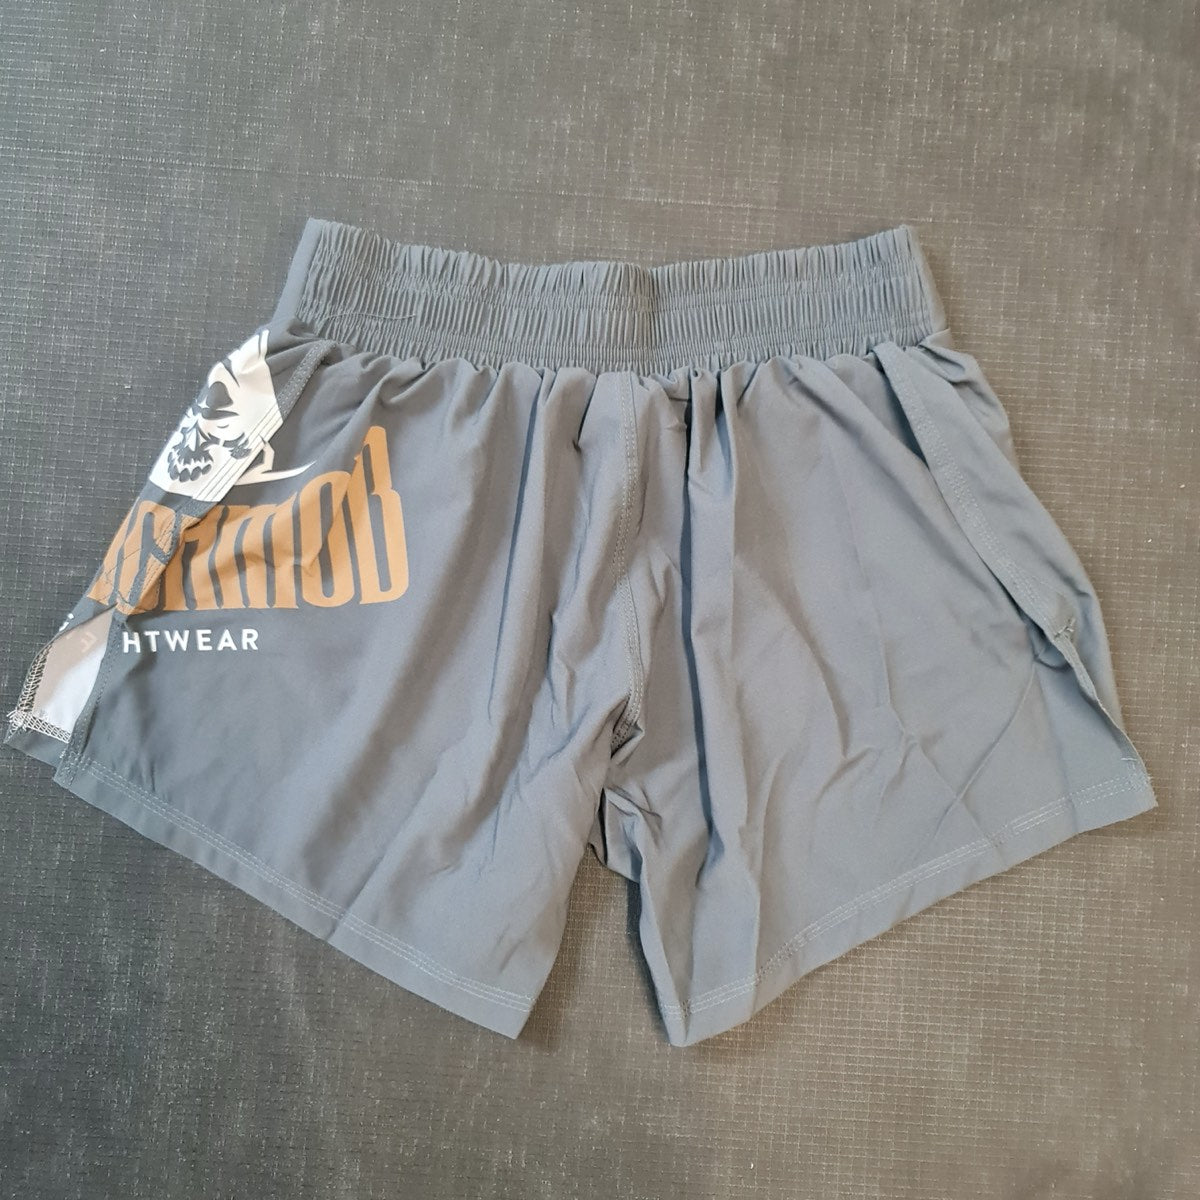 MOB Hybrid shorts grey – Clynchmob Fightwear